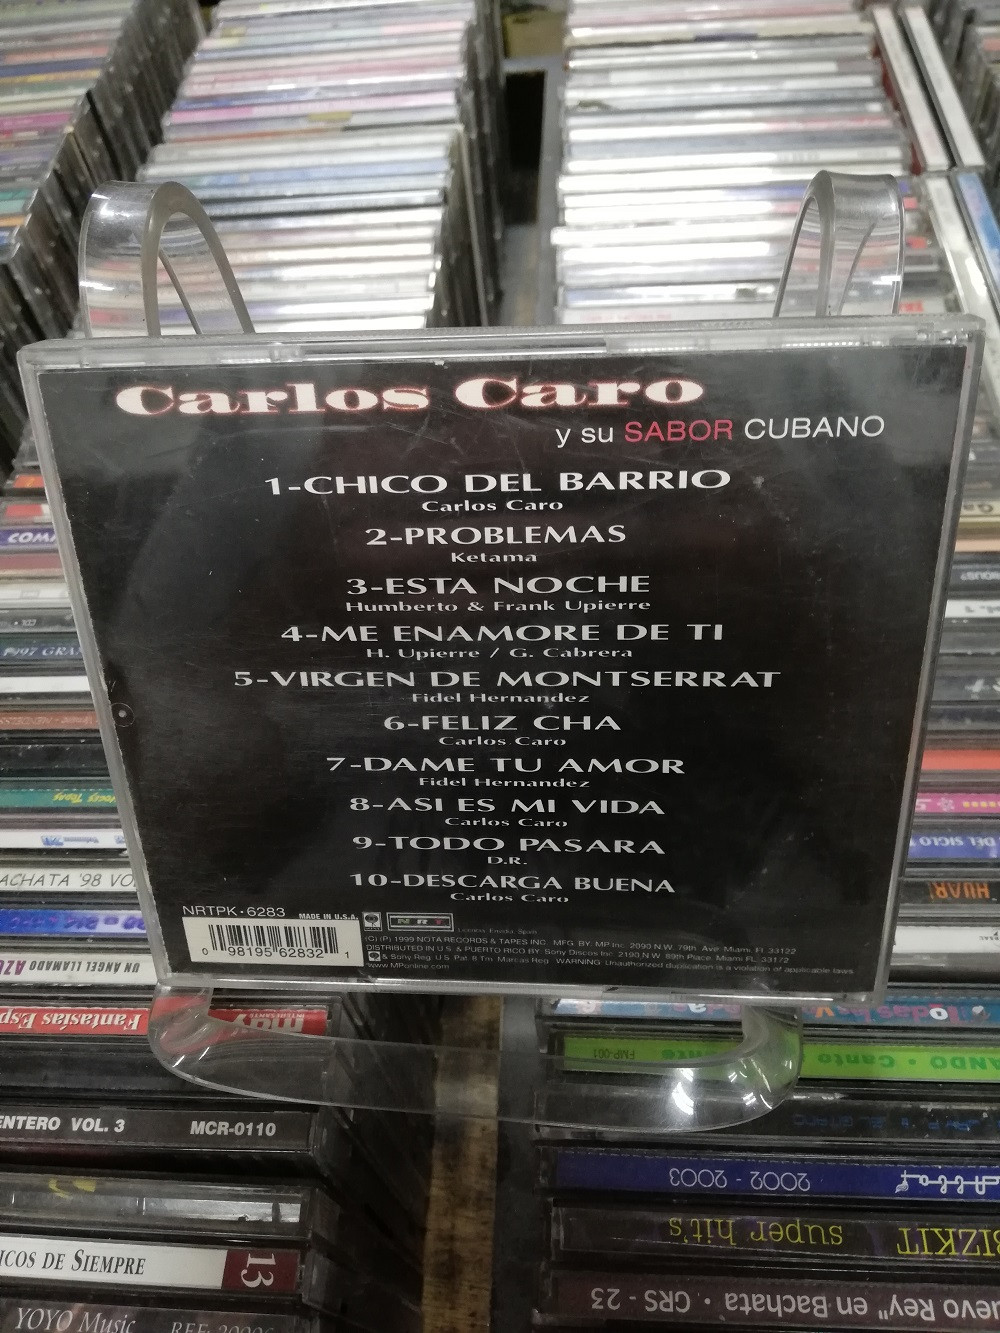 Imagen CD SALSA CUBANA CARLOS CARO Y SU SABOR CUBANO - DESCARGA BUENA 2